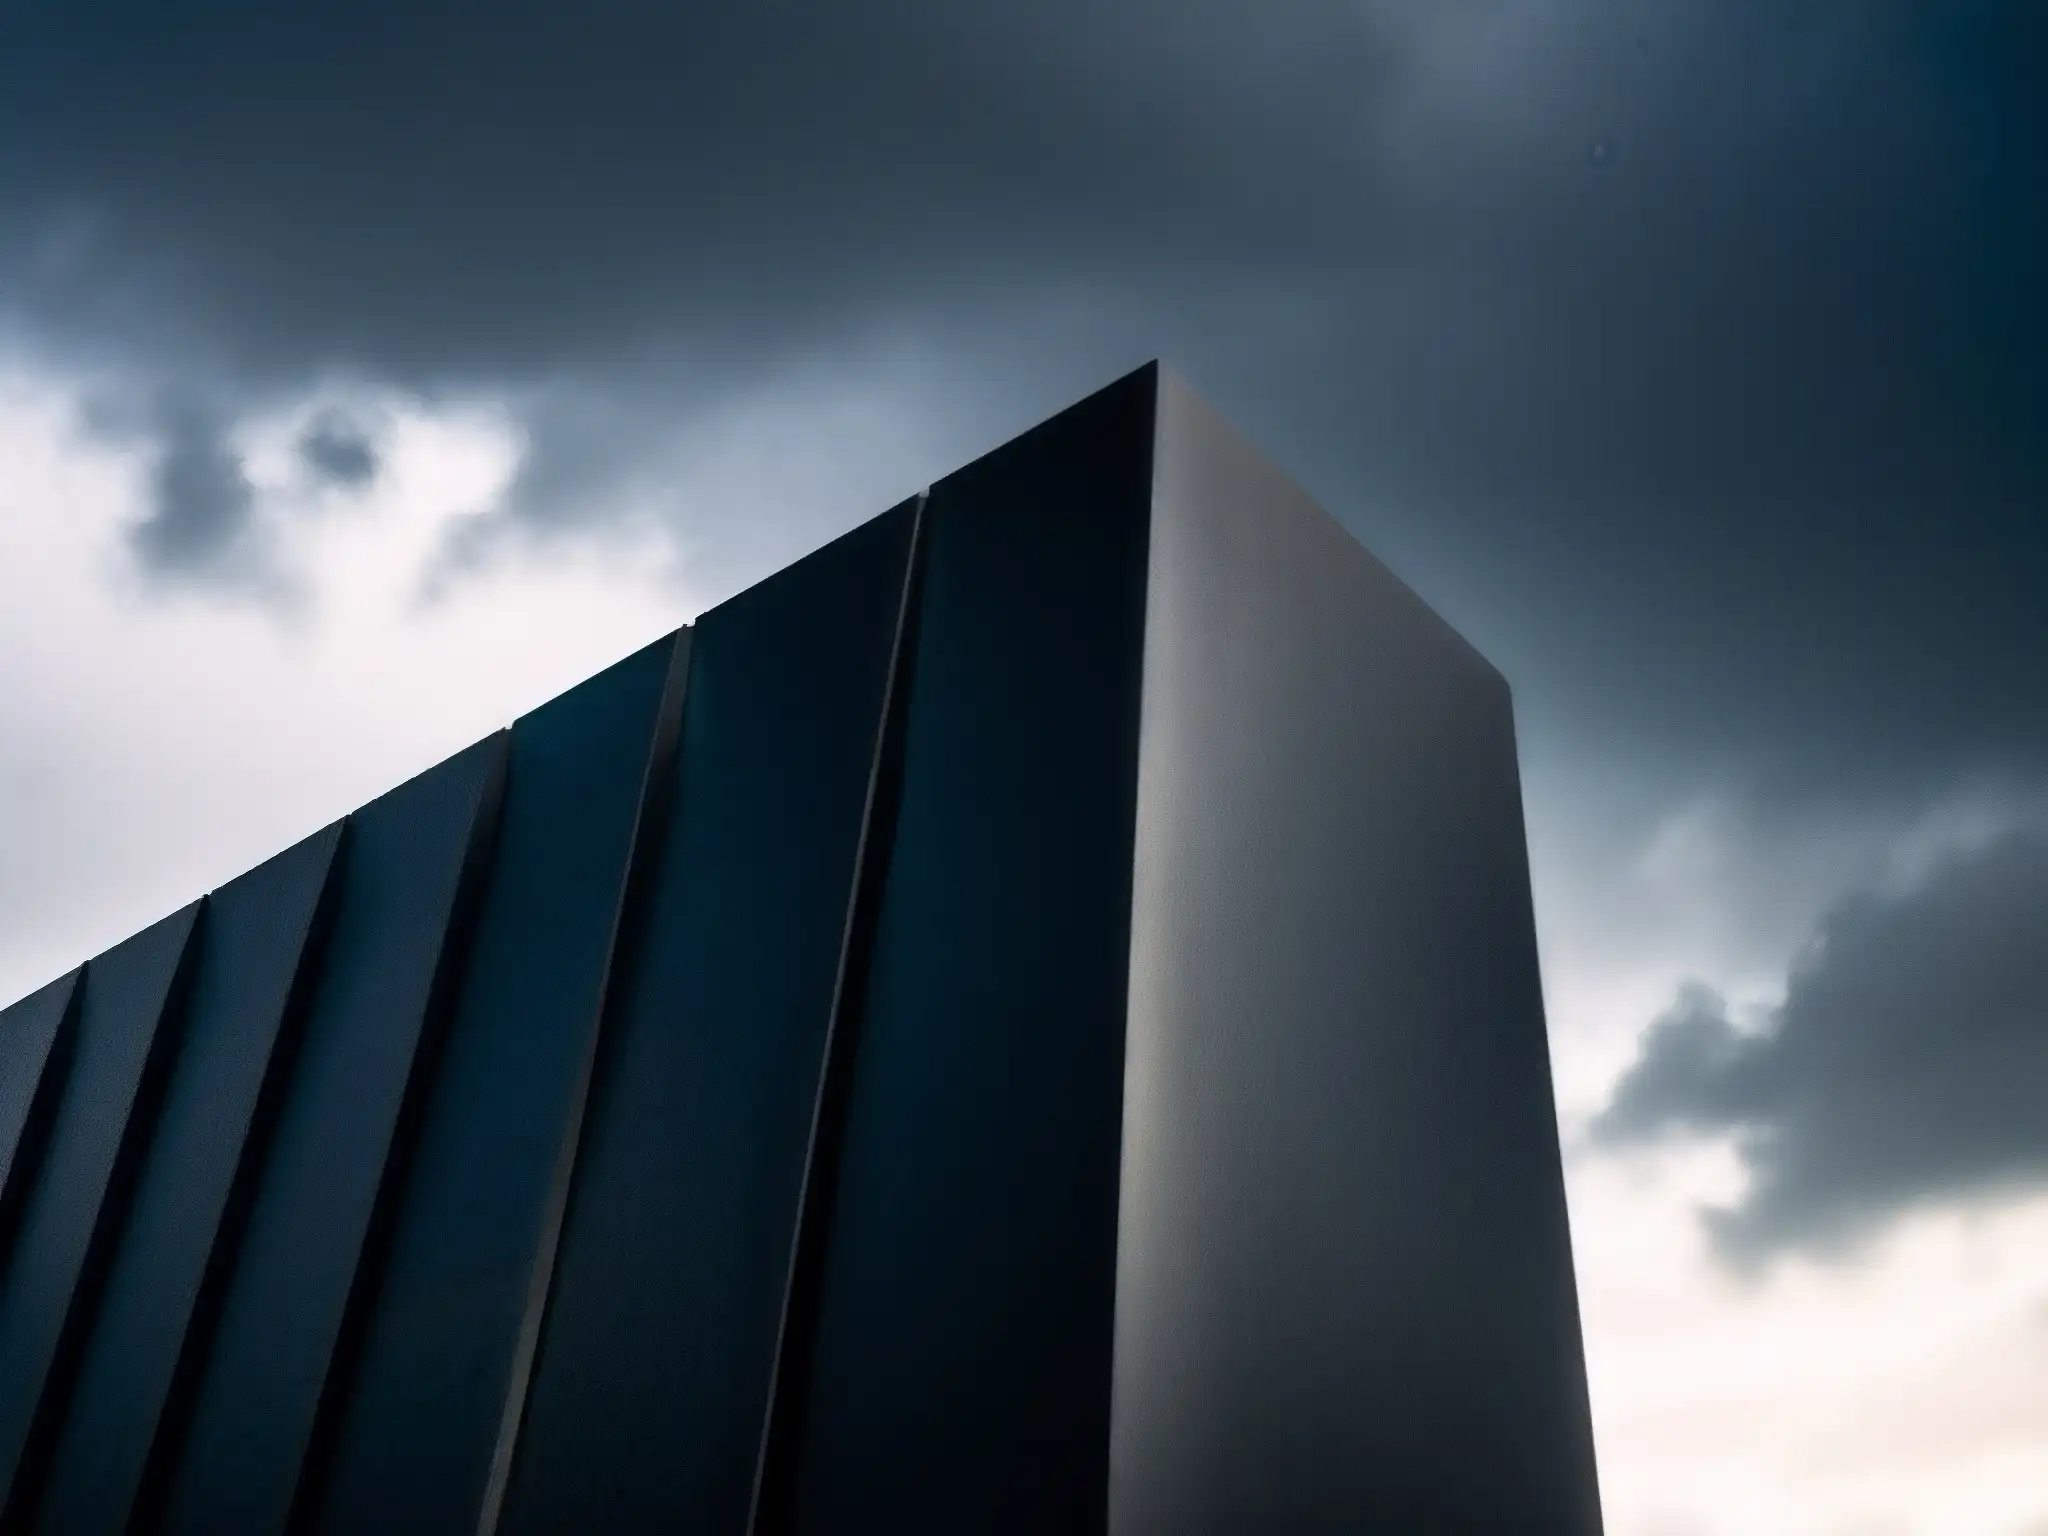 Imponente exterior de La Casa de los Tubos Oscuros, moderno diseño arquitectónico en contraste con el cielo tormentoso y misterioso